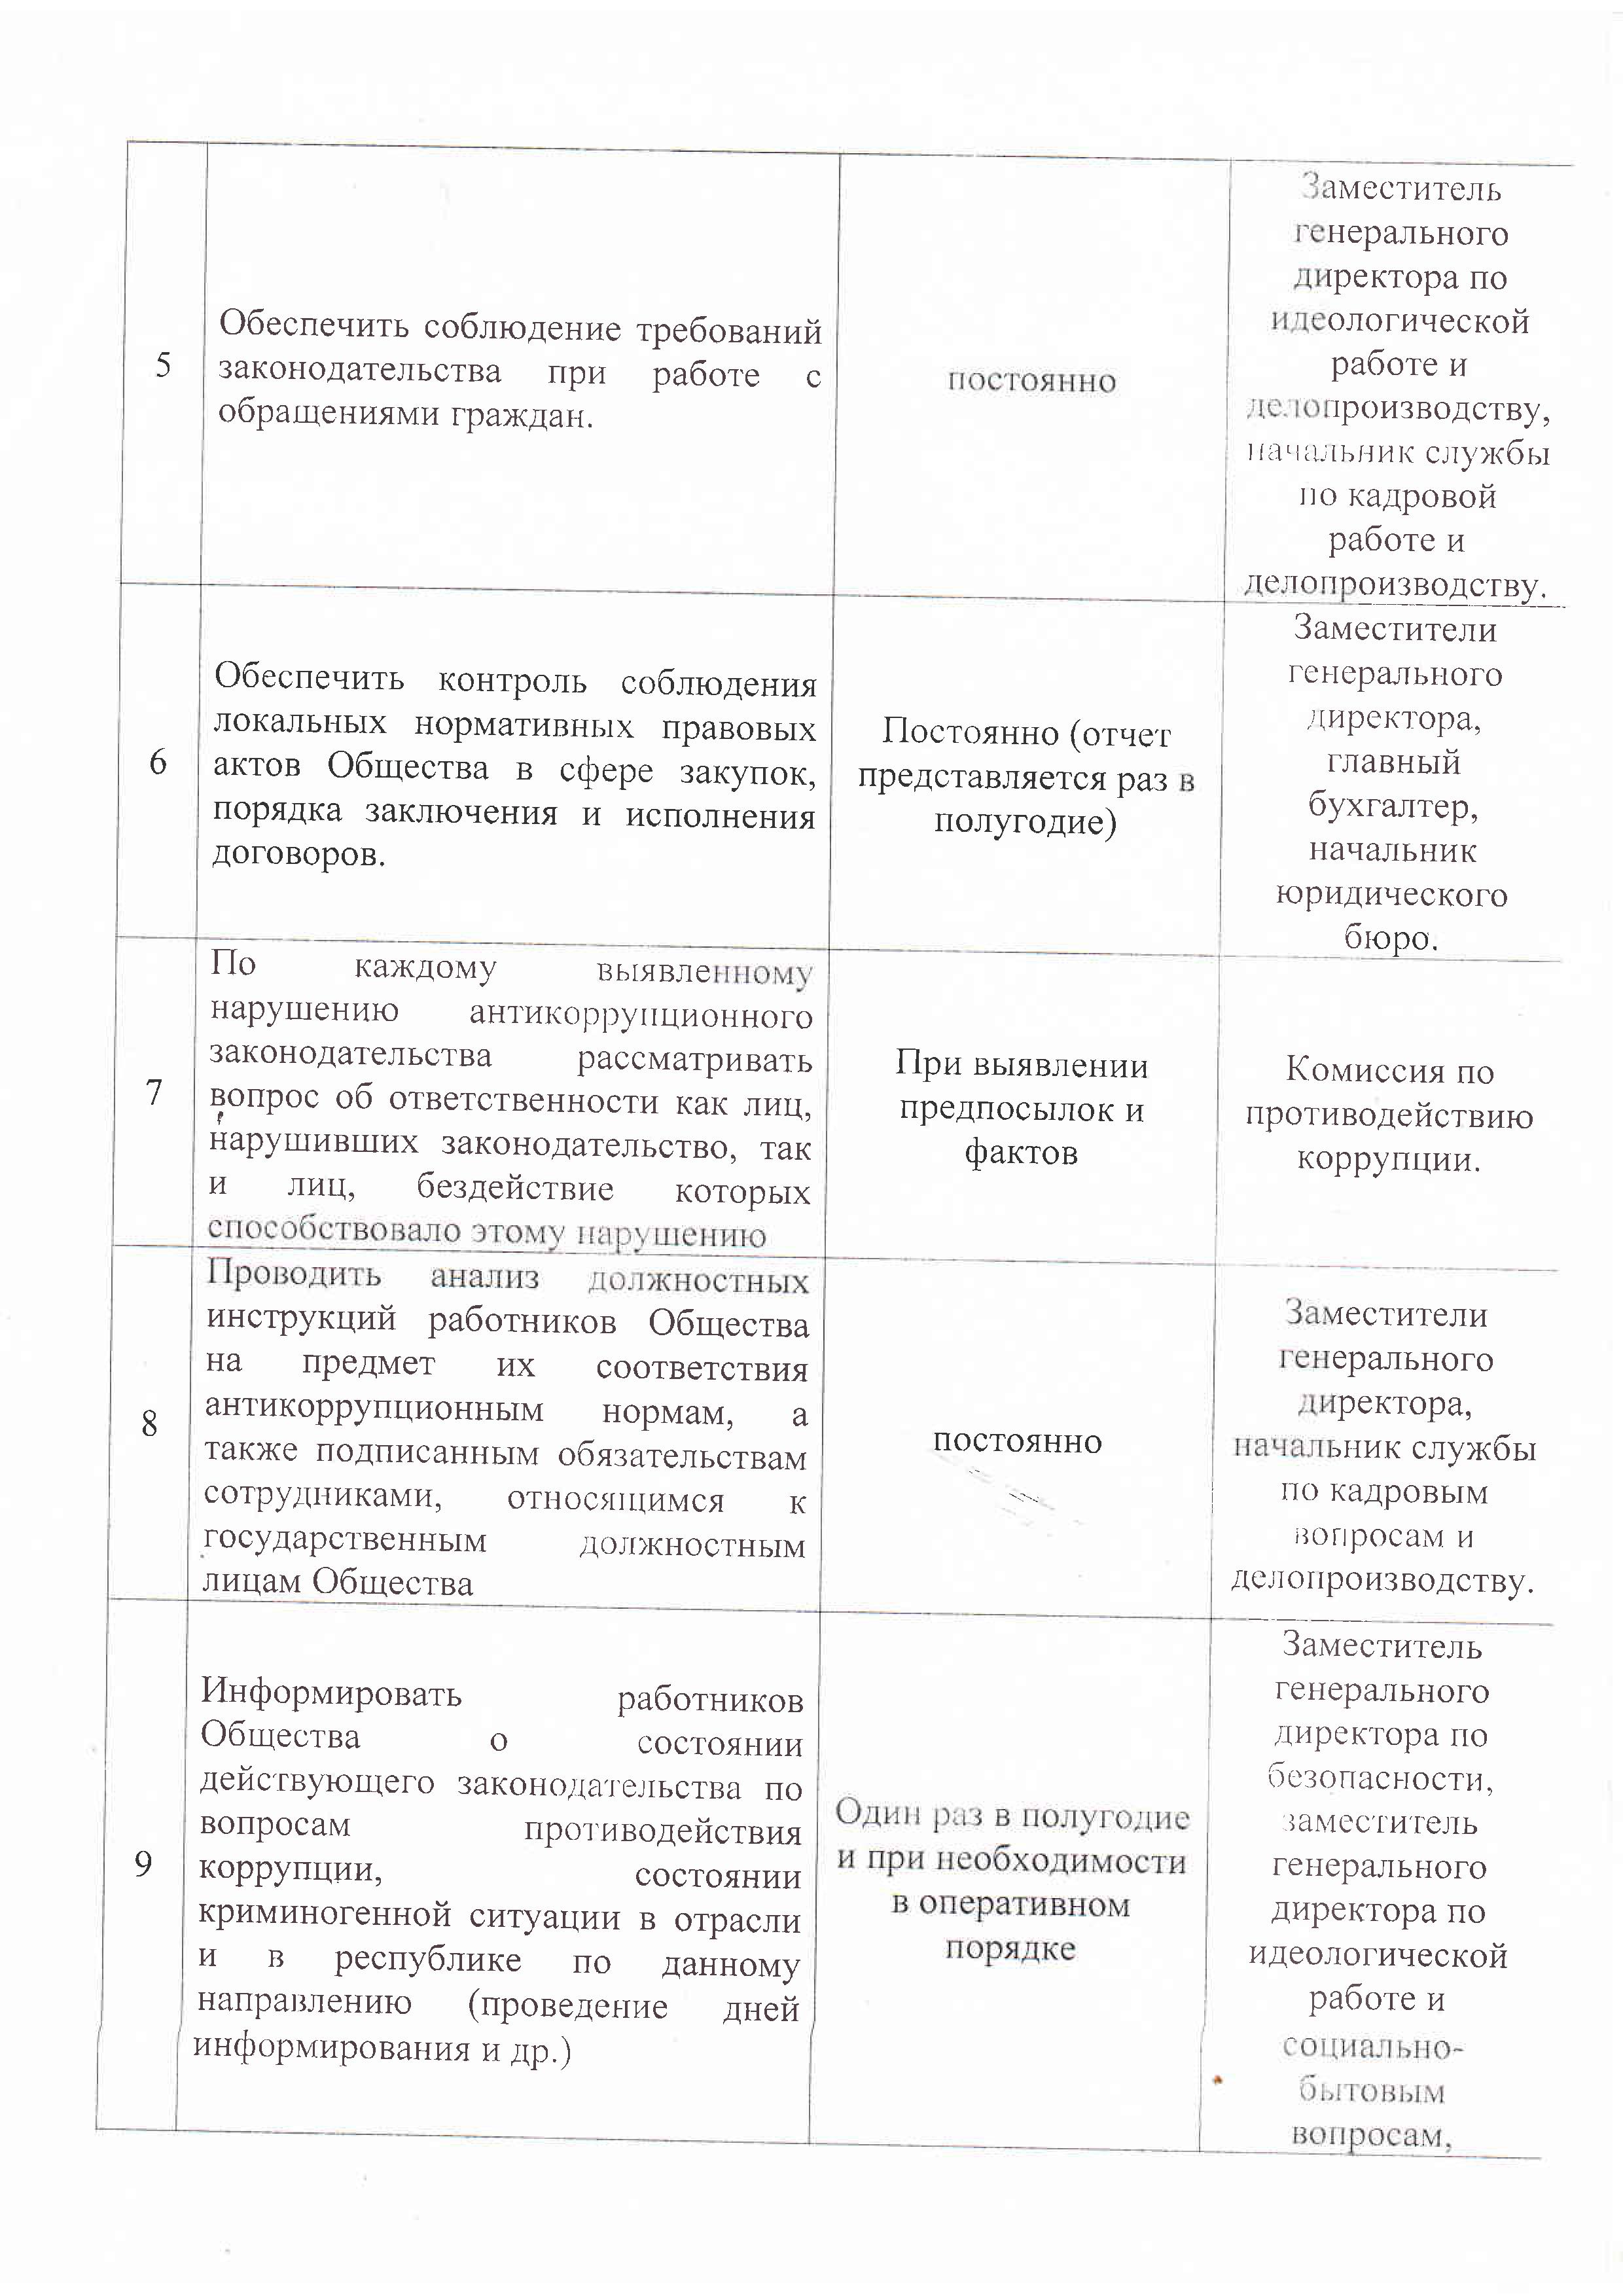 План работы комиссии ОАО "Оршанский авиаремонтный завод" по противодействию коррупции на 2020 год. 2 стр.